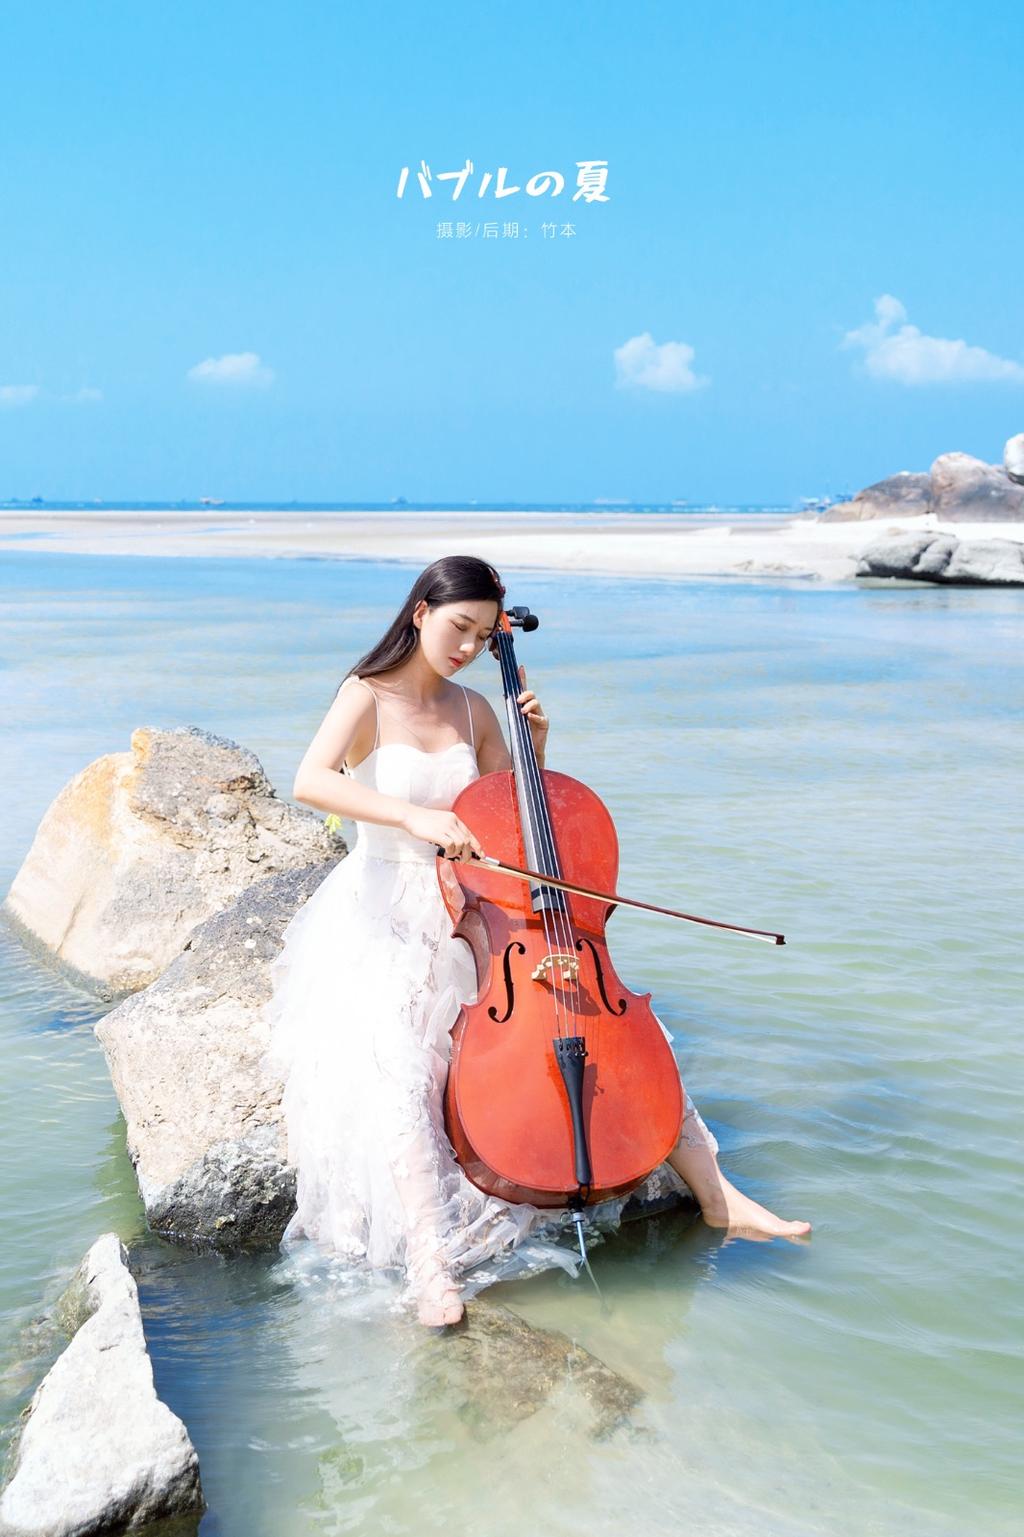 盛夏的大提琴少女